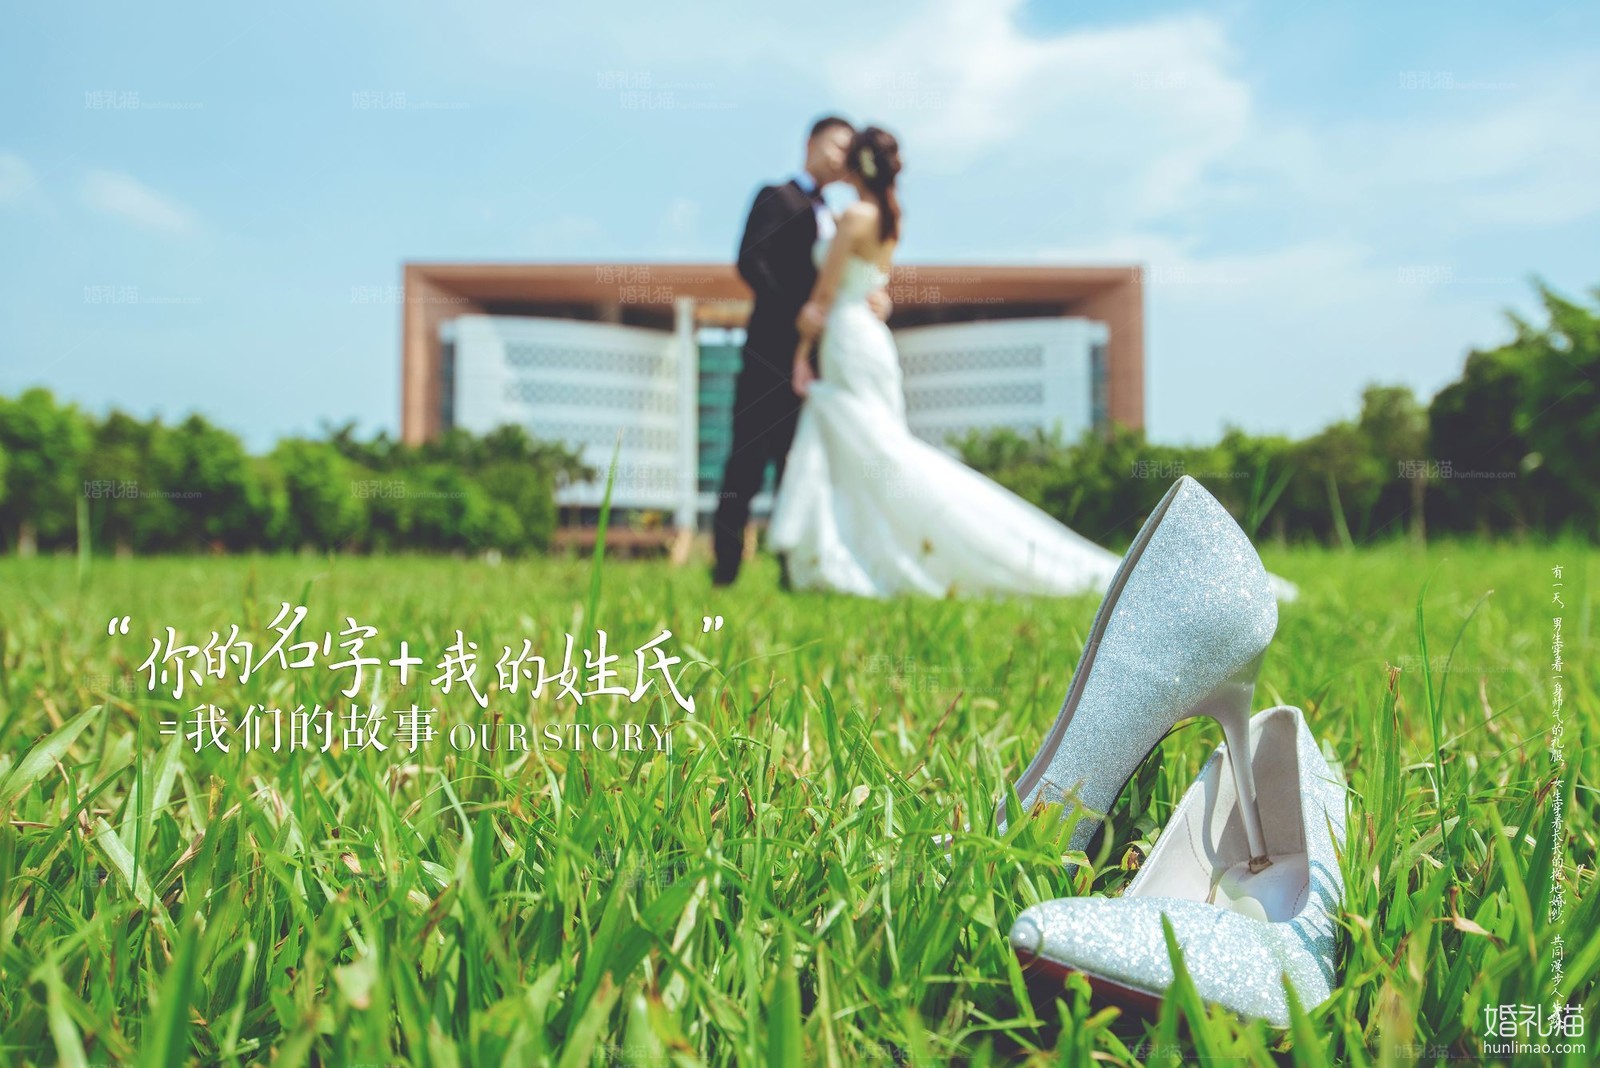 2018年11月广州婚纱照图片,,广州婚纱照,婚纱照图片